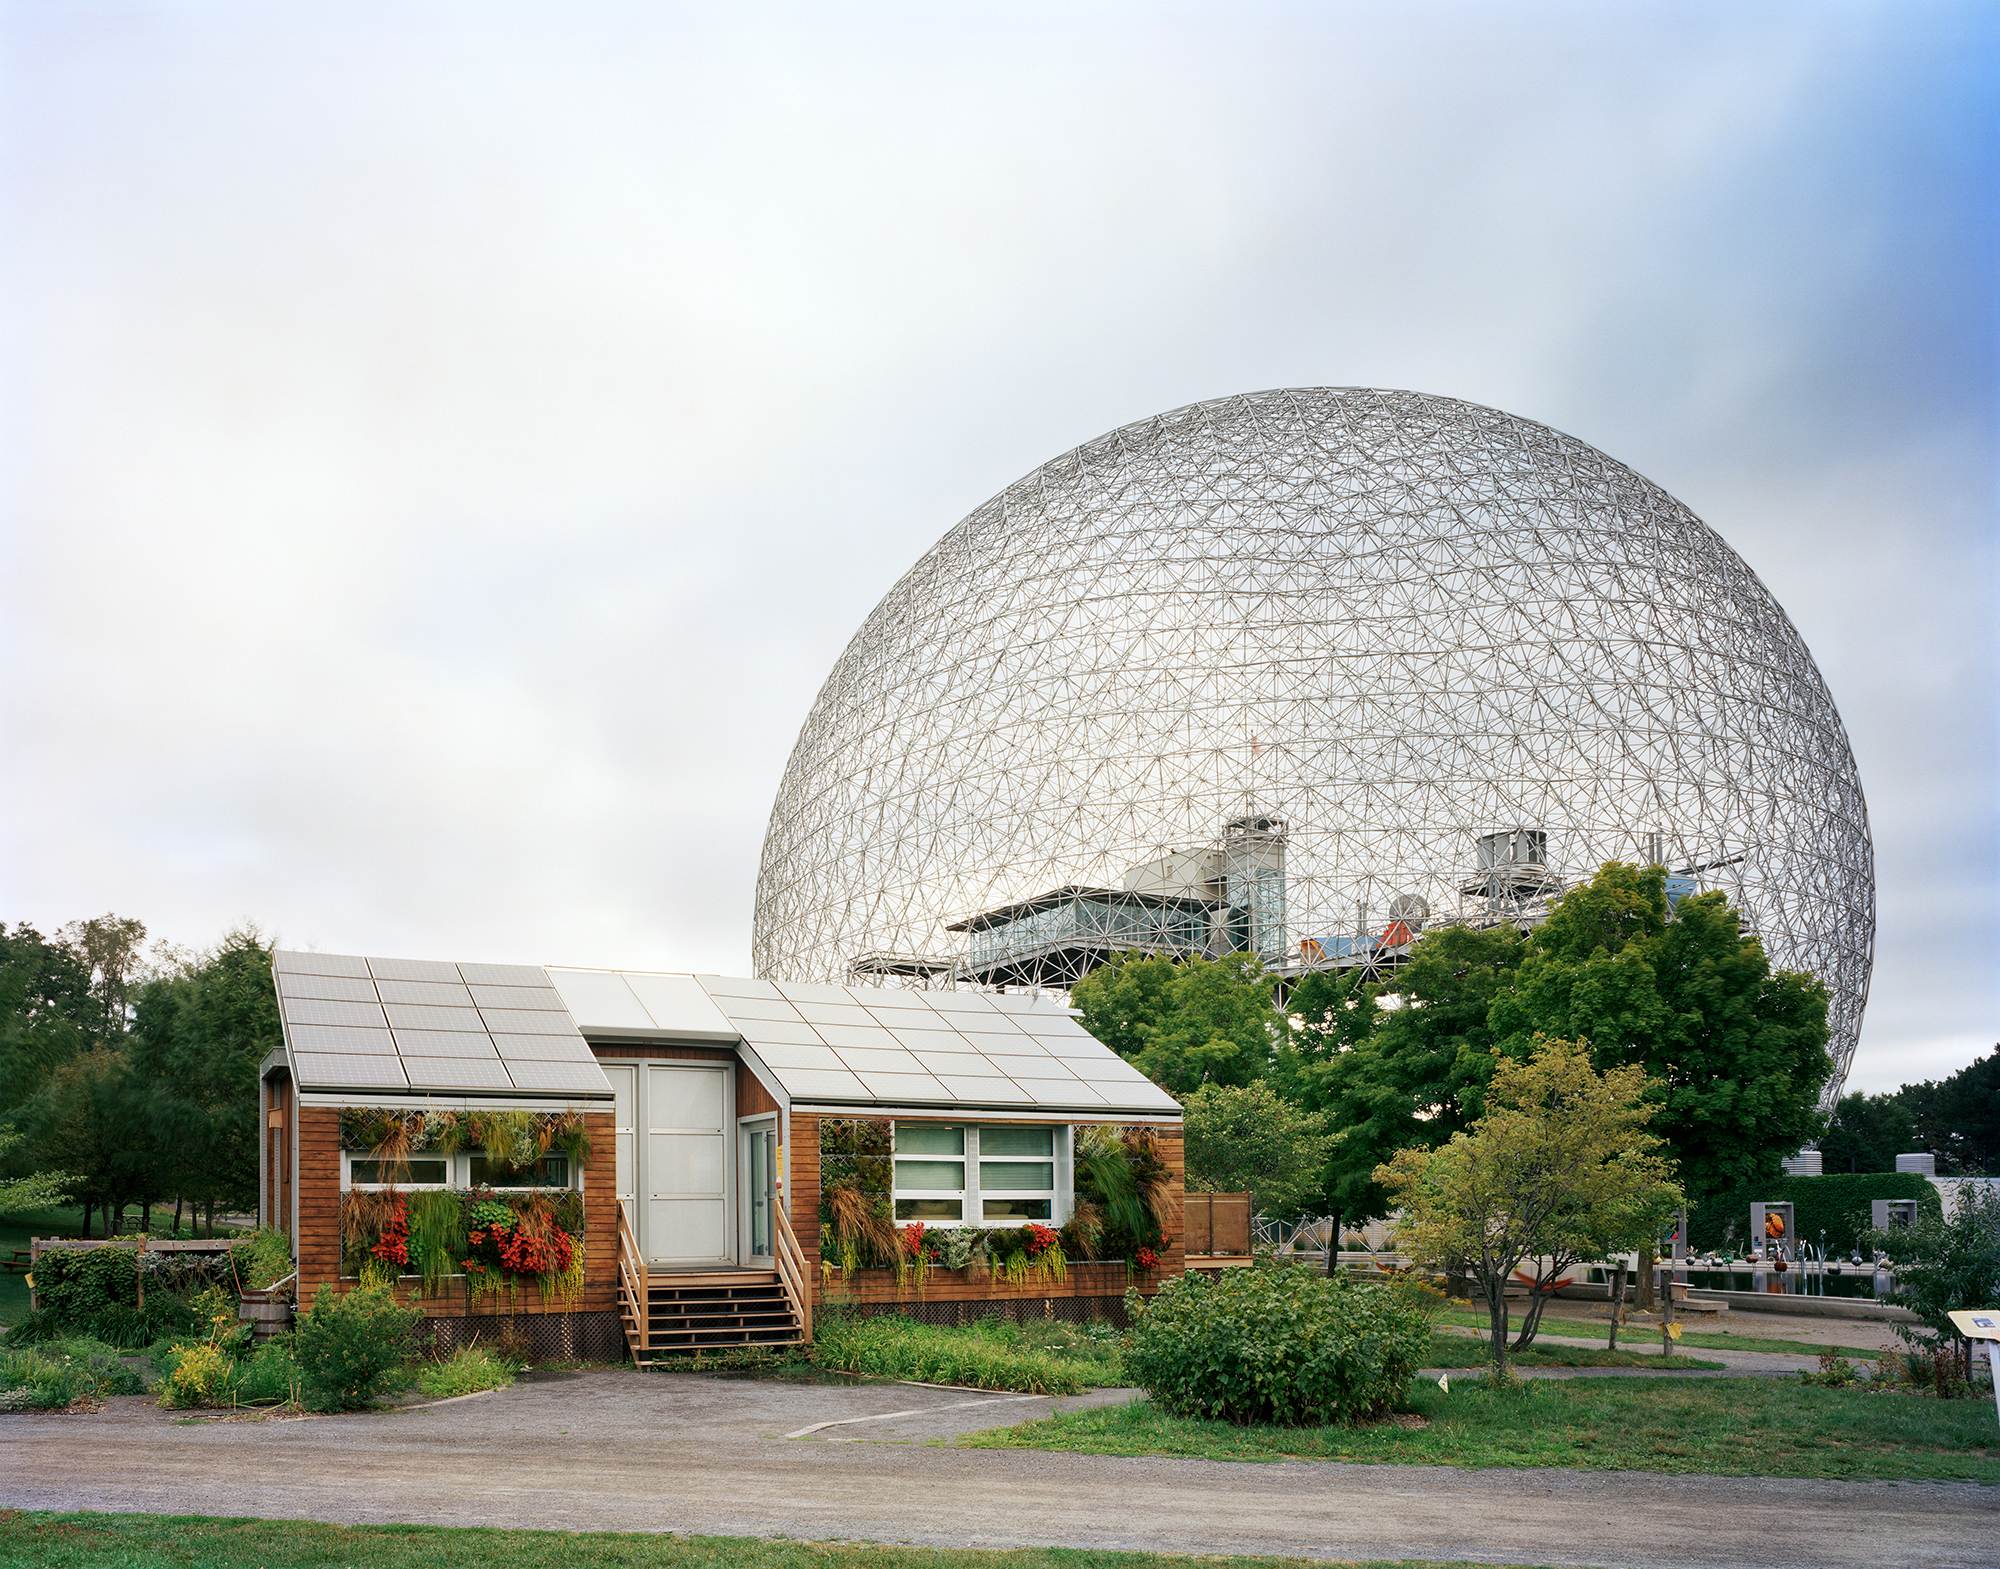 В 1967 году Всемирная выставка, также известная как &laquo;Экспо-67&raquo;, проходила в городе Монреаль и была приурочена к столетию Канадской конфедерации. Посвященная теме &laquo;Человек и его мир&raquo;, она стала одной из самых успешных всемирных выставок, собрав более 50 млн&nbsp;посетителей, включая таких знаменитостей, как президент США Линдон Джонсон, королева Великобритании Елизавета II, президент Пятой республики Шарль де Голль, а также сенатор Роберт Кеннеди, вдова его брата, 35-го президента США, Жаклин Кеннеди и жена князя Монако Грейс Келли.

Одним из главных объектов выставки стал Американский павильон, построенный по проекту архитектора Ричарда Фуллера. Ключевым элементом сооружения, получившего название &laquo;Биосфера&raquo;, стал геодезический купол &mdash; сферическая конструкция, собранная из стержней, высотой в 20 этажей. Фуллер получил патент на этот вид купола незадолго до выставки.

В начале 1970-х годов павильон сгорел, но позже был восстановлен. Сейчас здание принадлежит департаменту окружающей среды Канады, а внутри расположен музей, посвященный окружающей среде и водным ресурсам.
